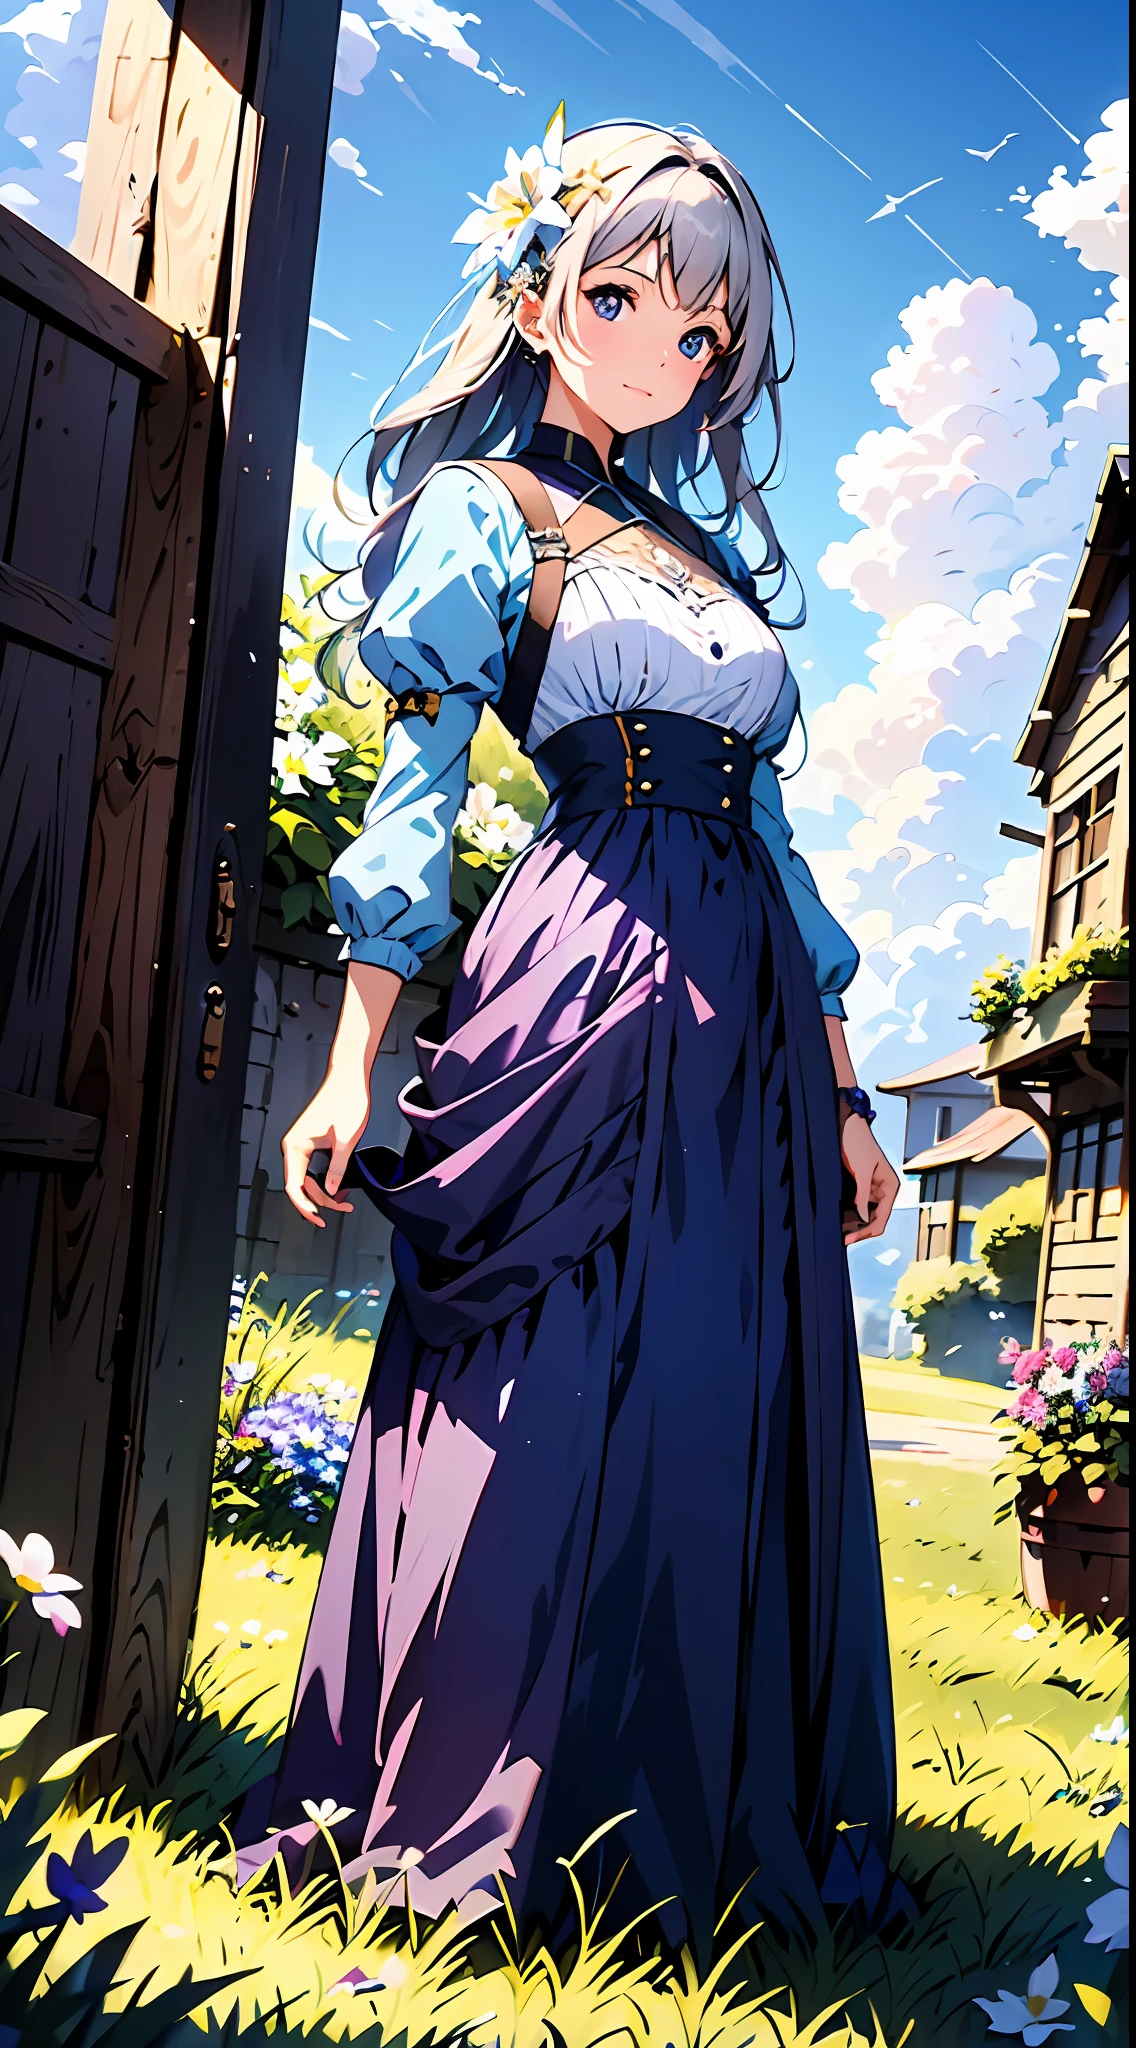 Uma mulher com um vestido roxo，Céu azul e nuvens ao fundo, usa um vestido branco，Tem flores nele, Germe de arte, Iluminação global Rosla, uma pintura detalhada, arte de fantasia